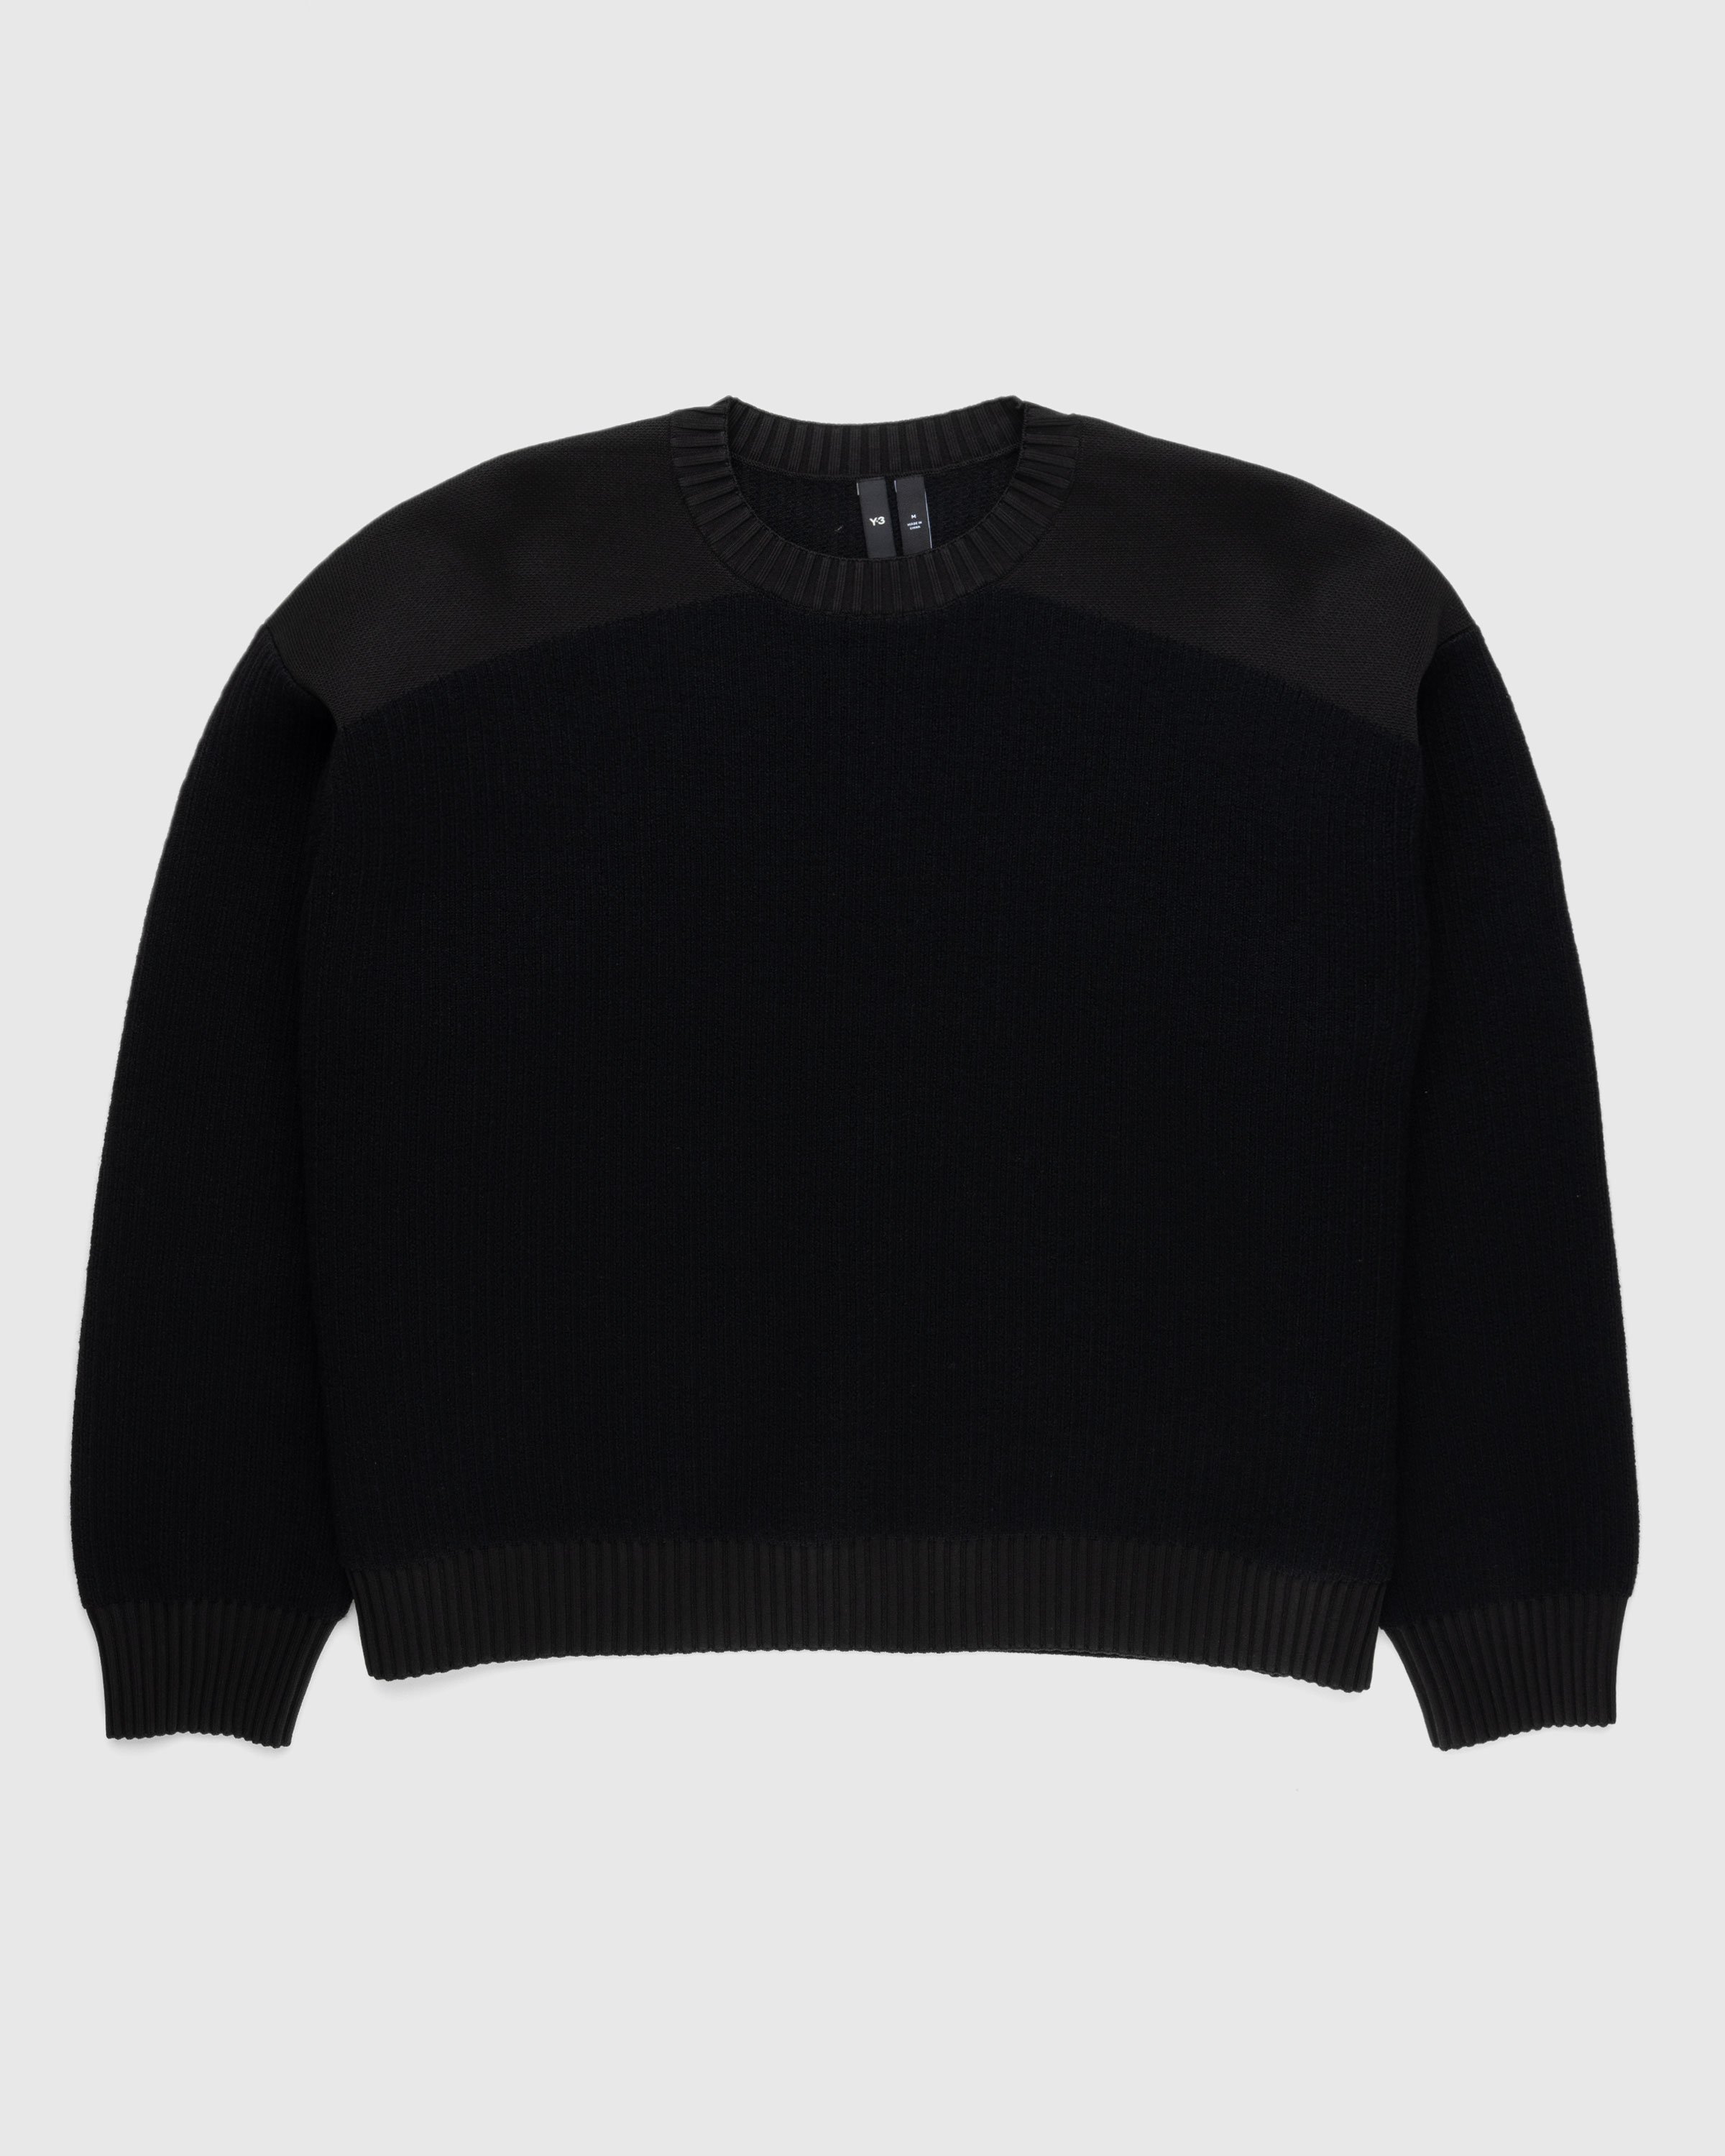 Y-3 - Utility Crewneck Sweater Black - Clothing - Black - Image 1